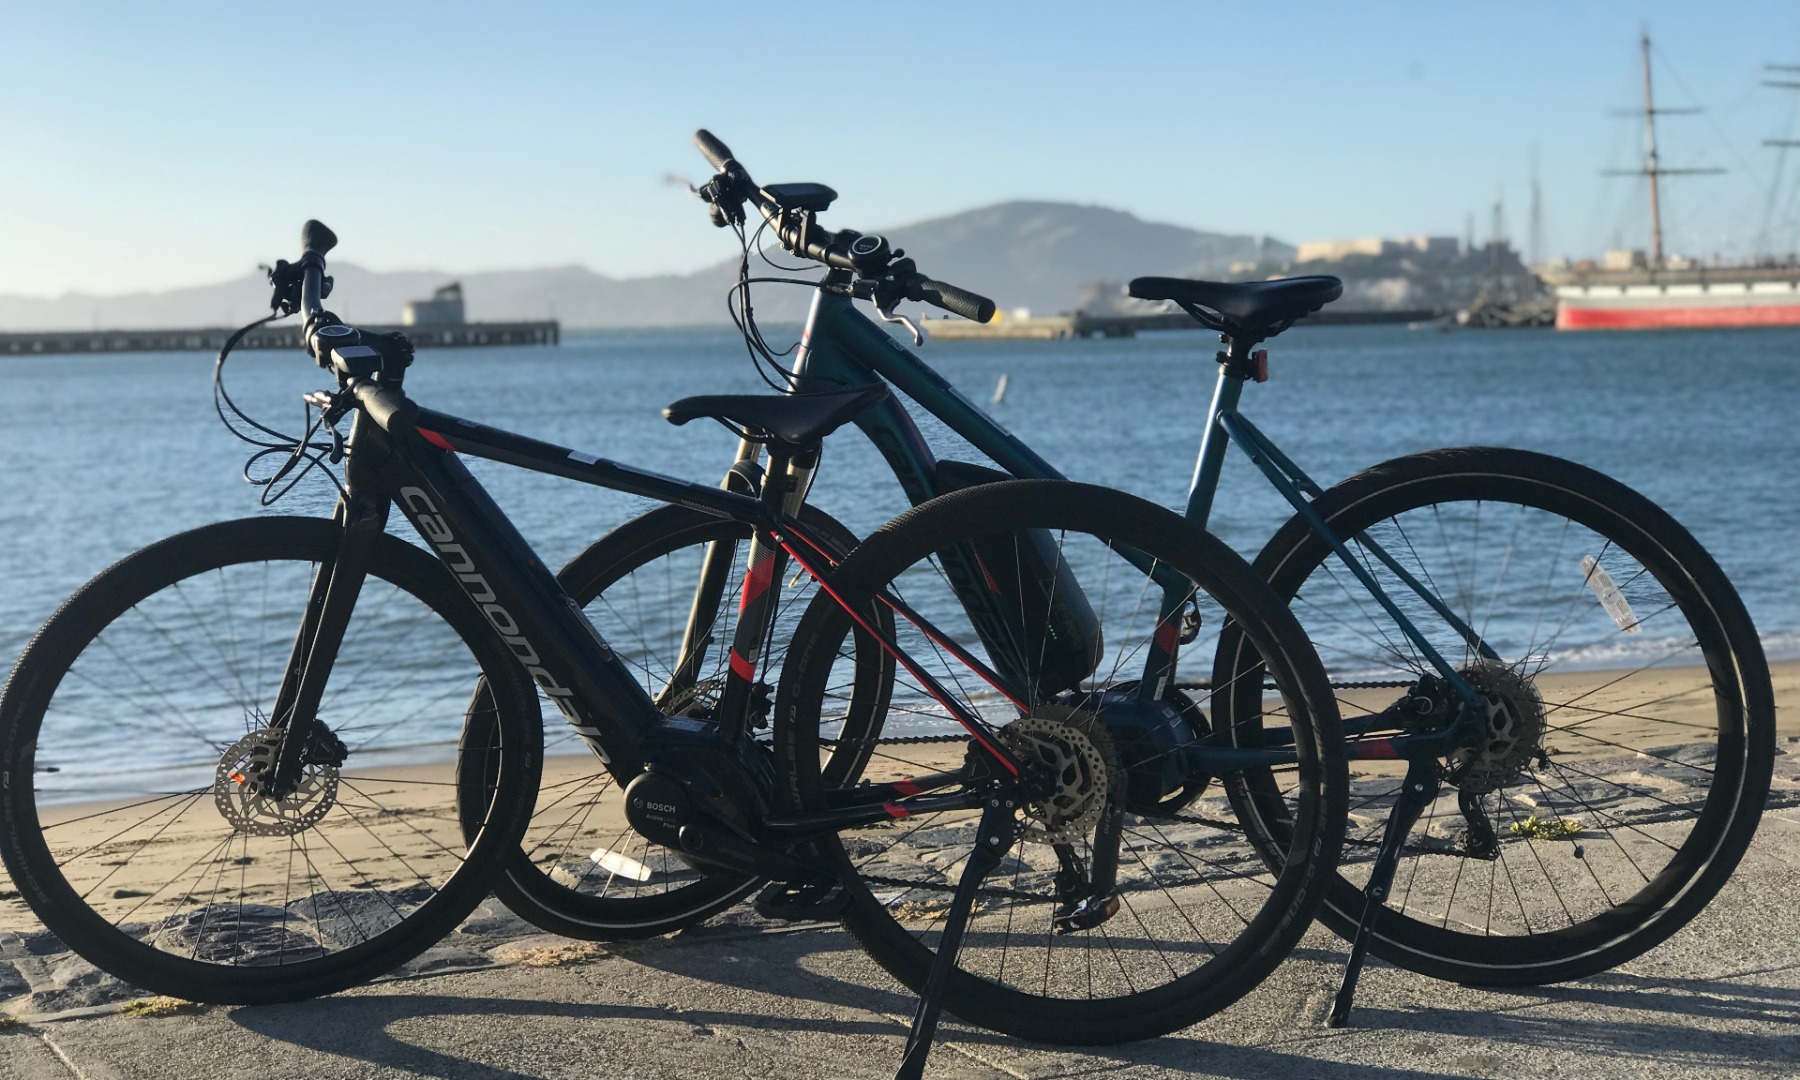 舊金山電動自行車1日租借